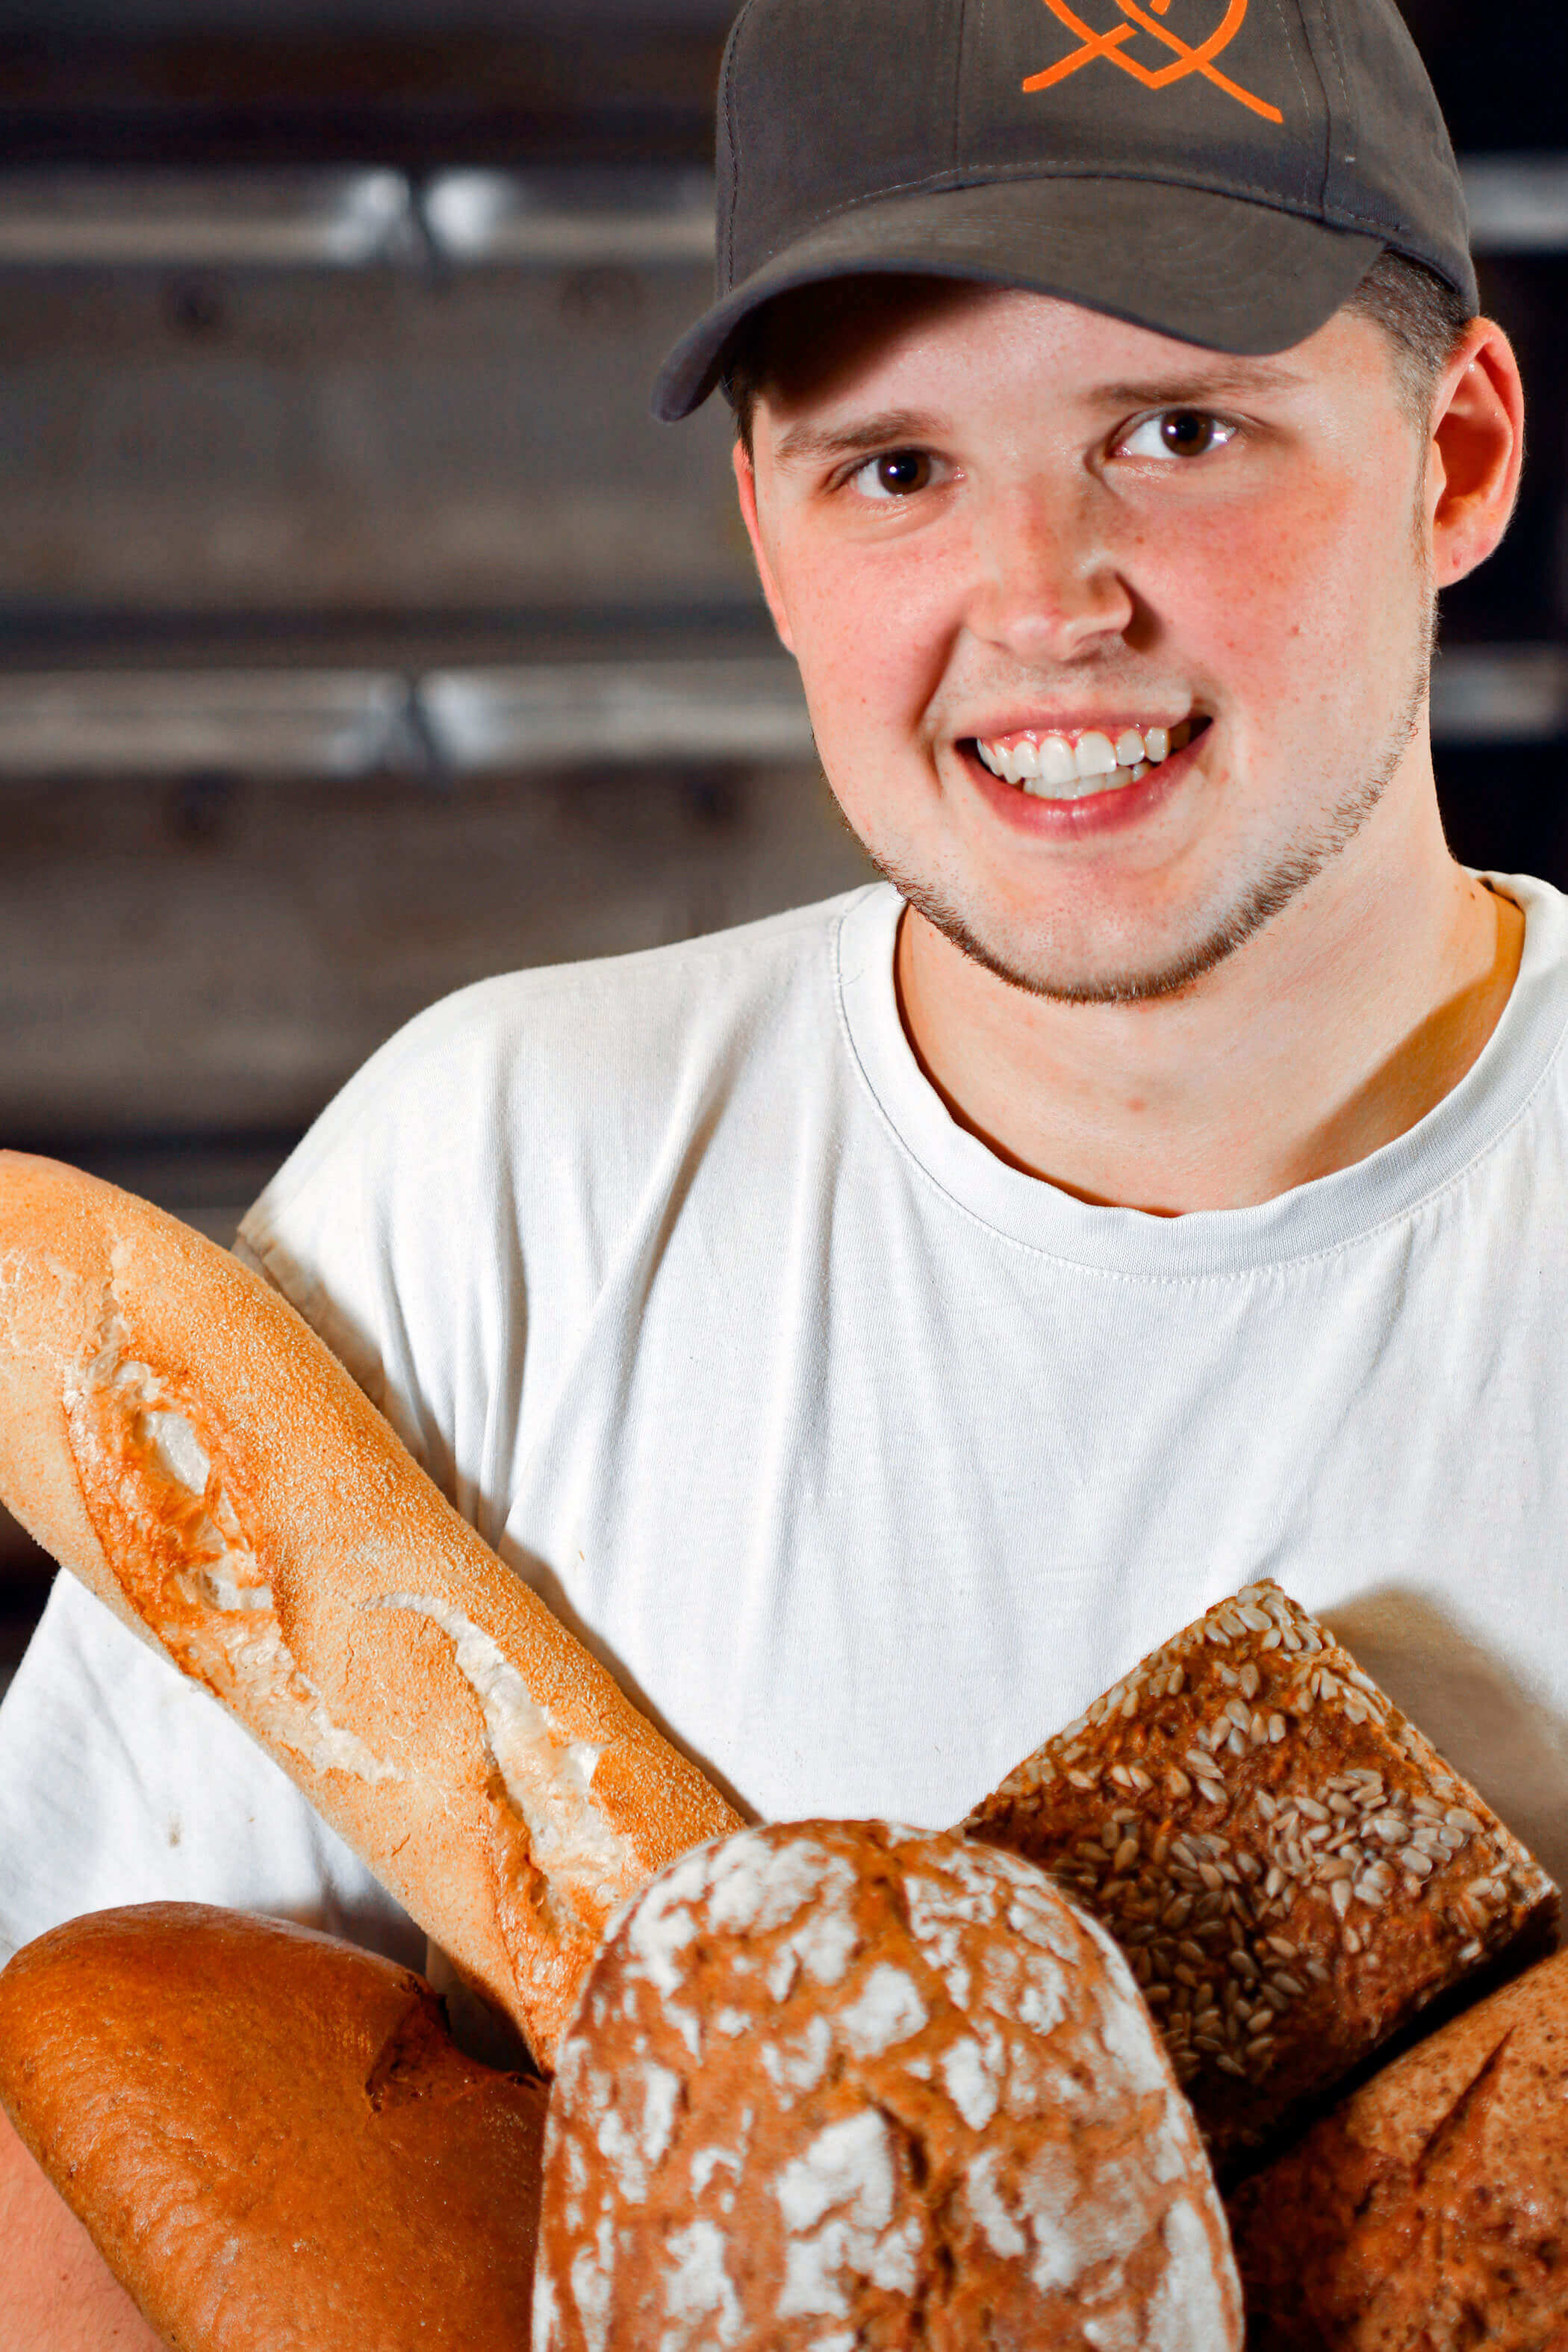 Leckeres Brot aus der Region Hannover